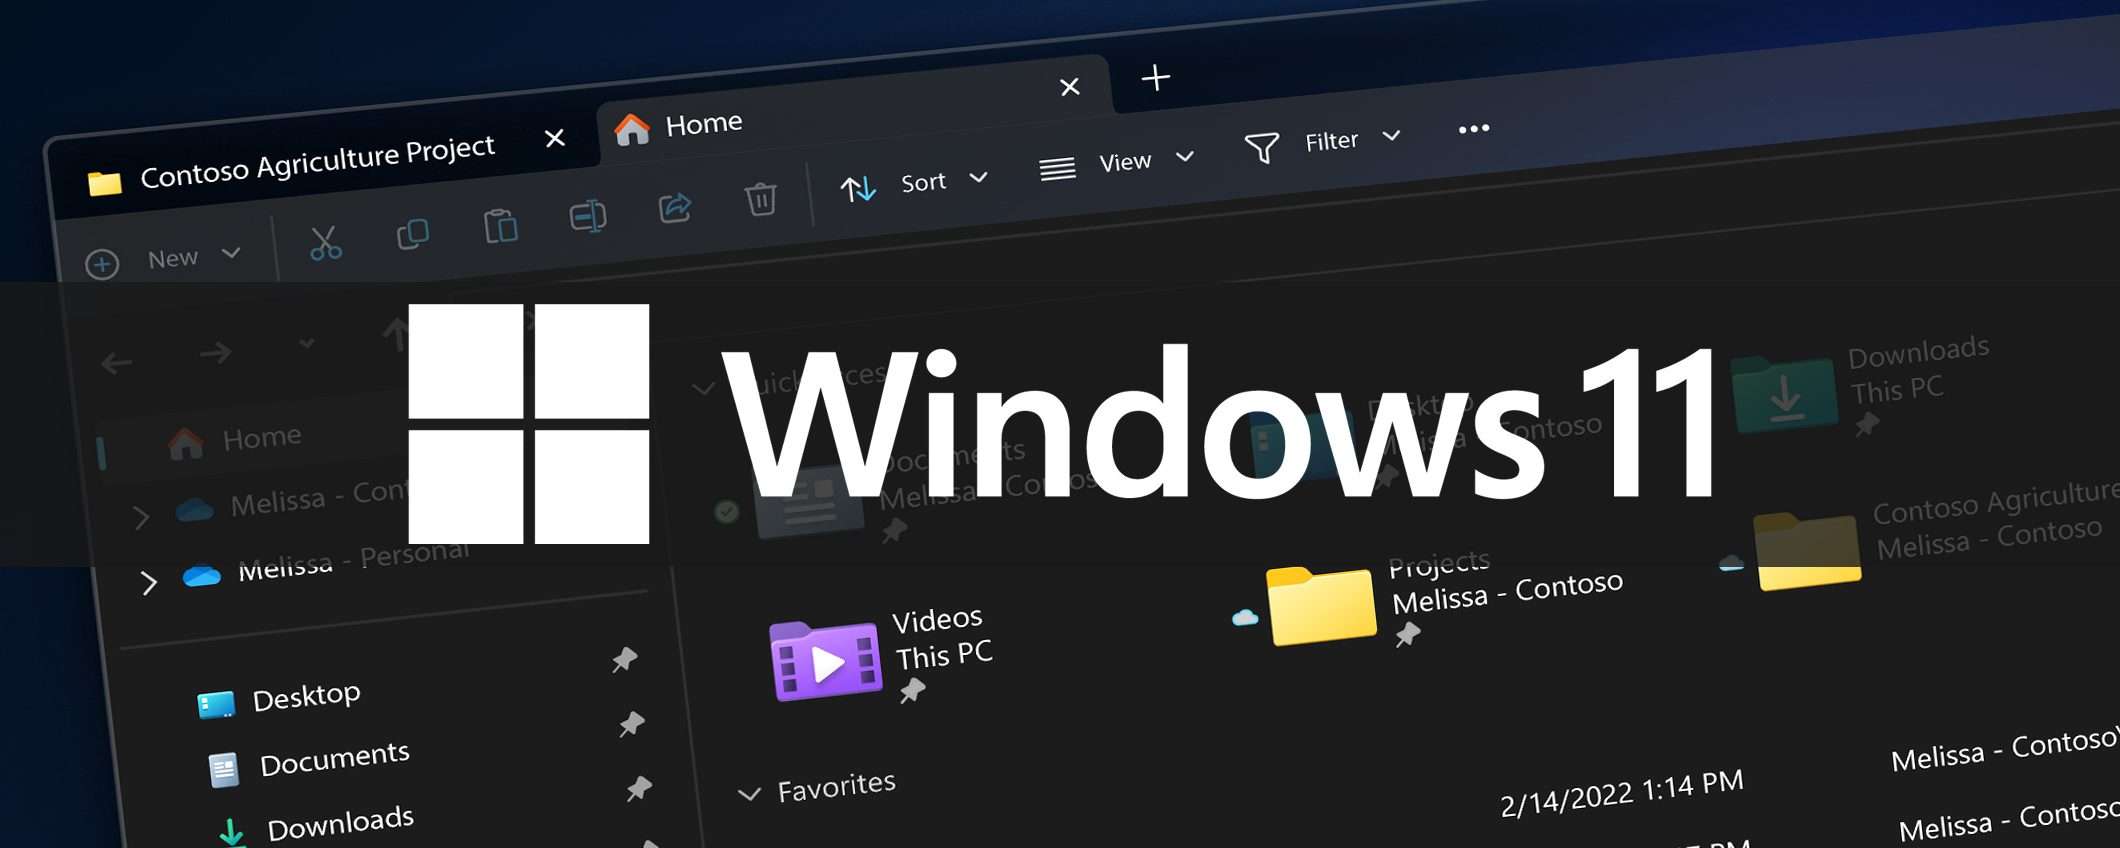 Windows 11: Esplora File con schede, ci siamo quasi